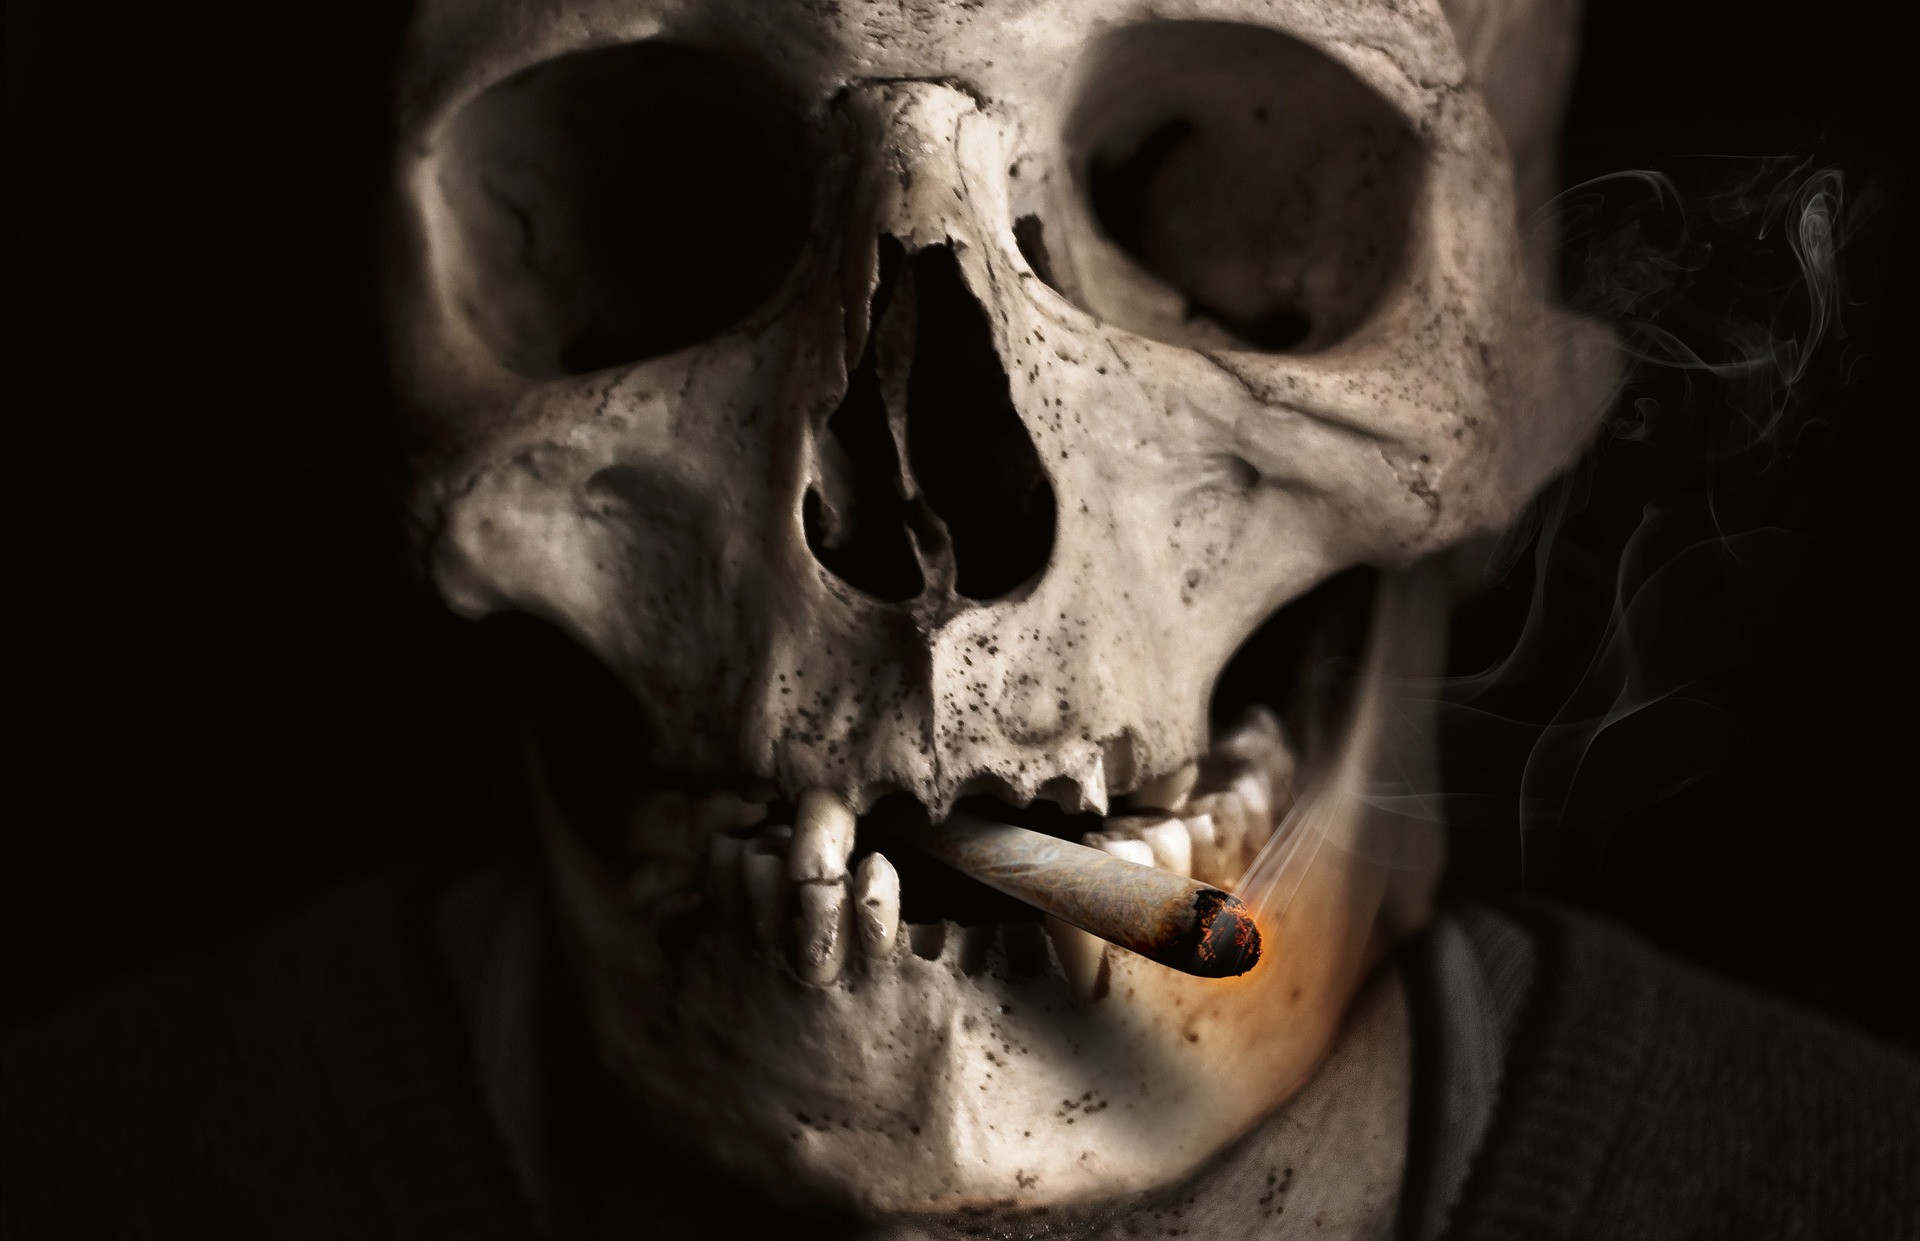 Caveira com cigarro (Foto: Comfreak/Pixabay/Creative Commons)